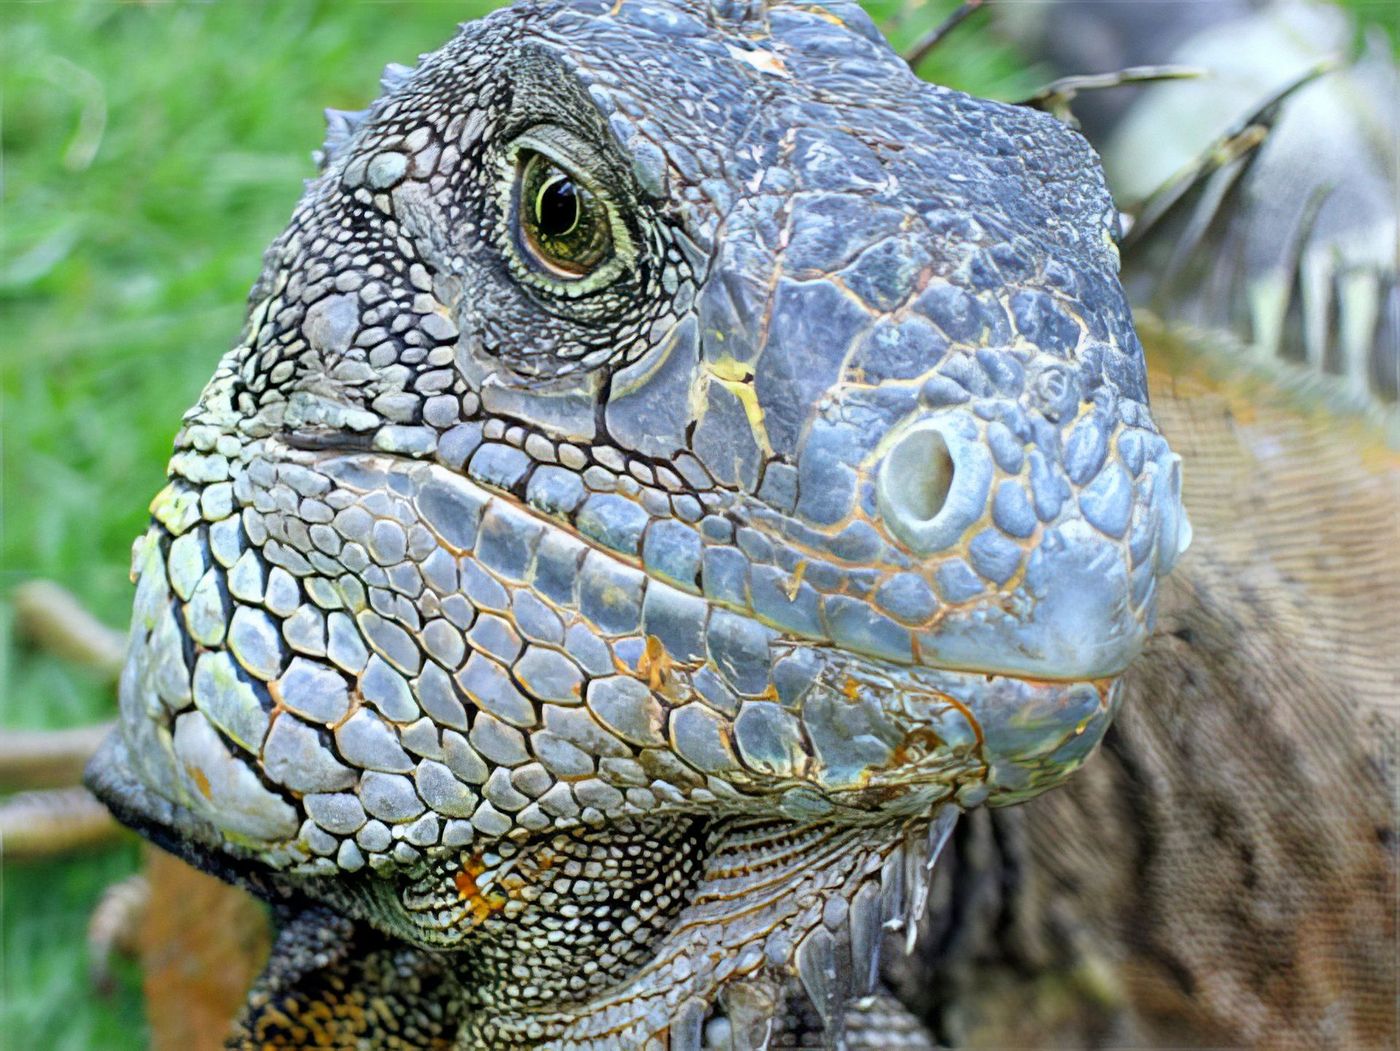 Iguane en liberté dans un parc à Guayaquil